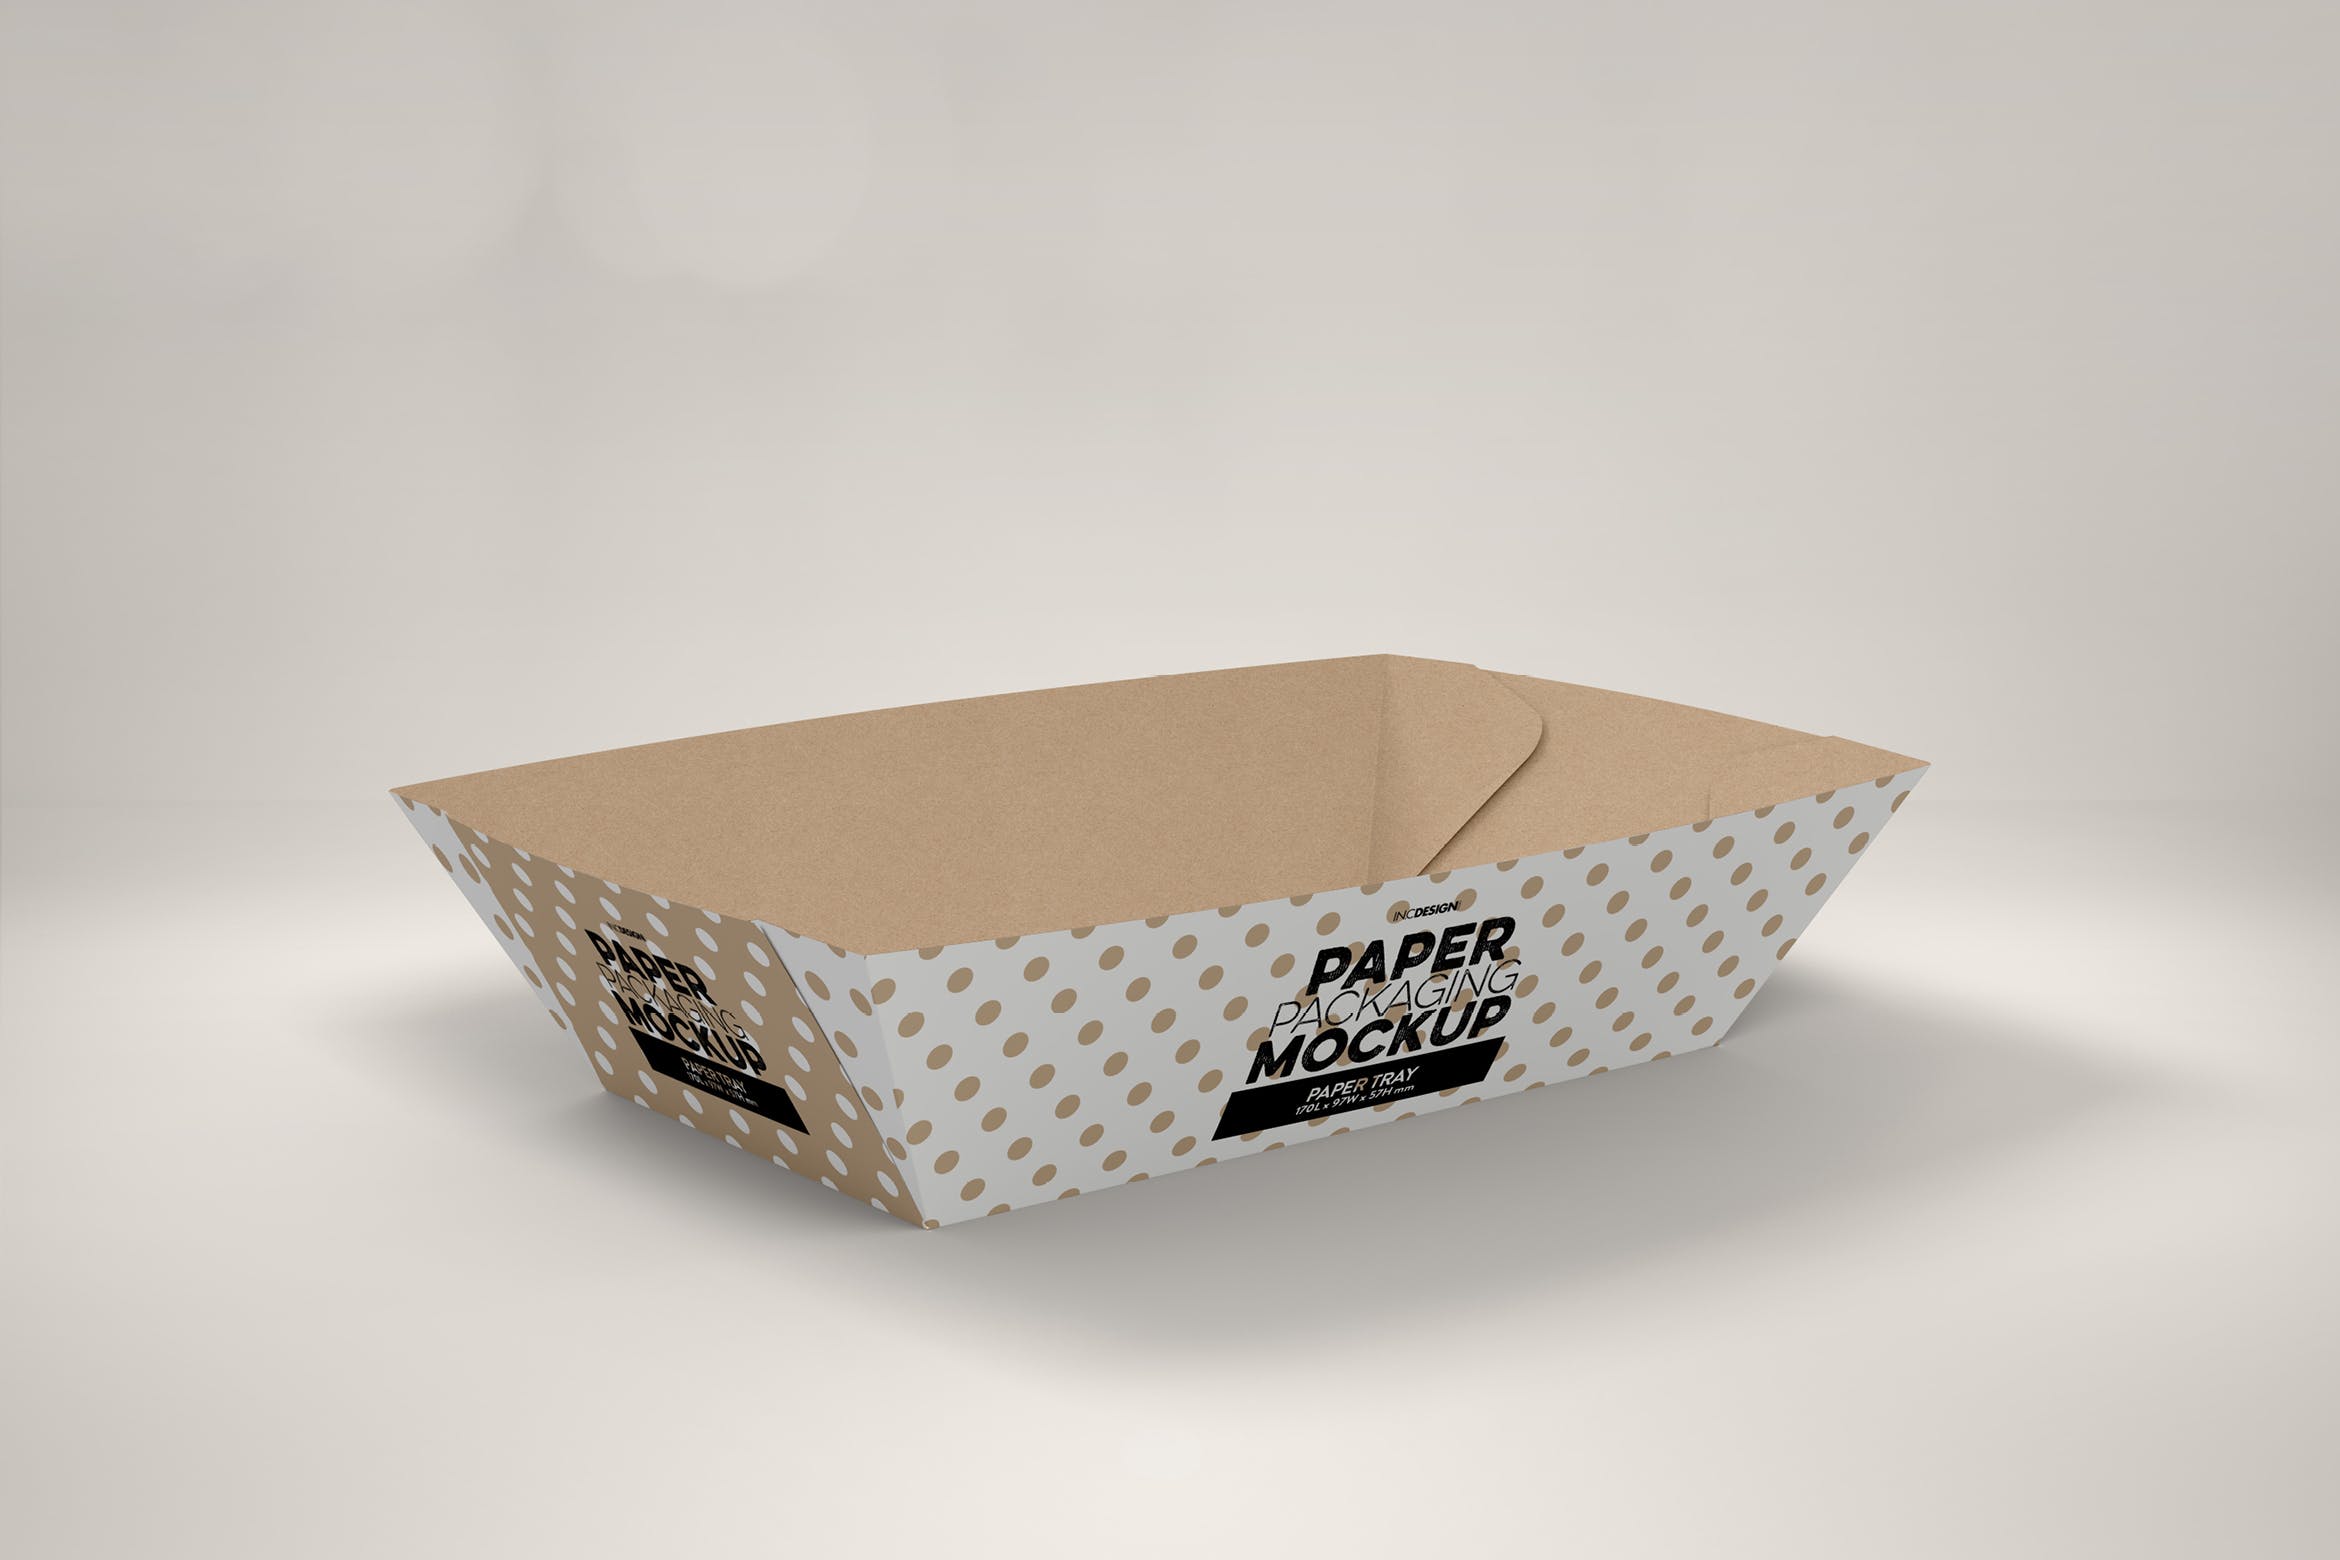 创意纸盘包装设计效果图样机模板 Paper Tray 1 Packaging Mockup插图